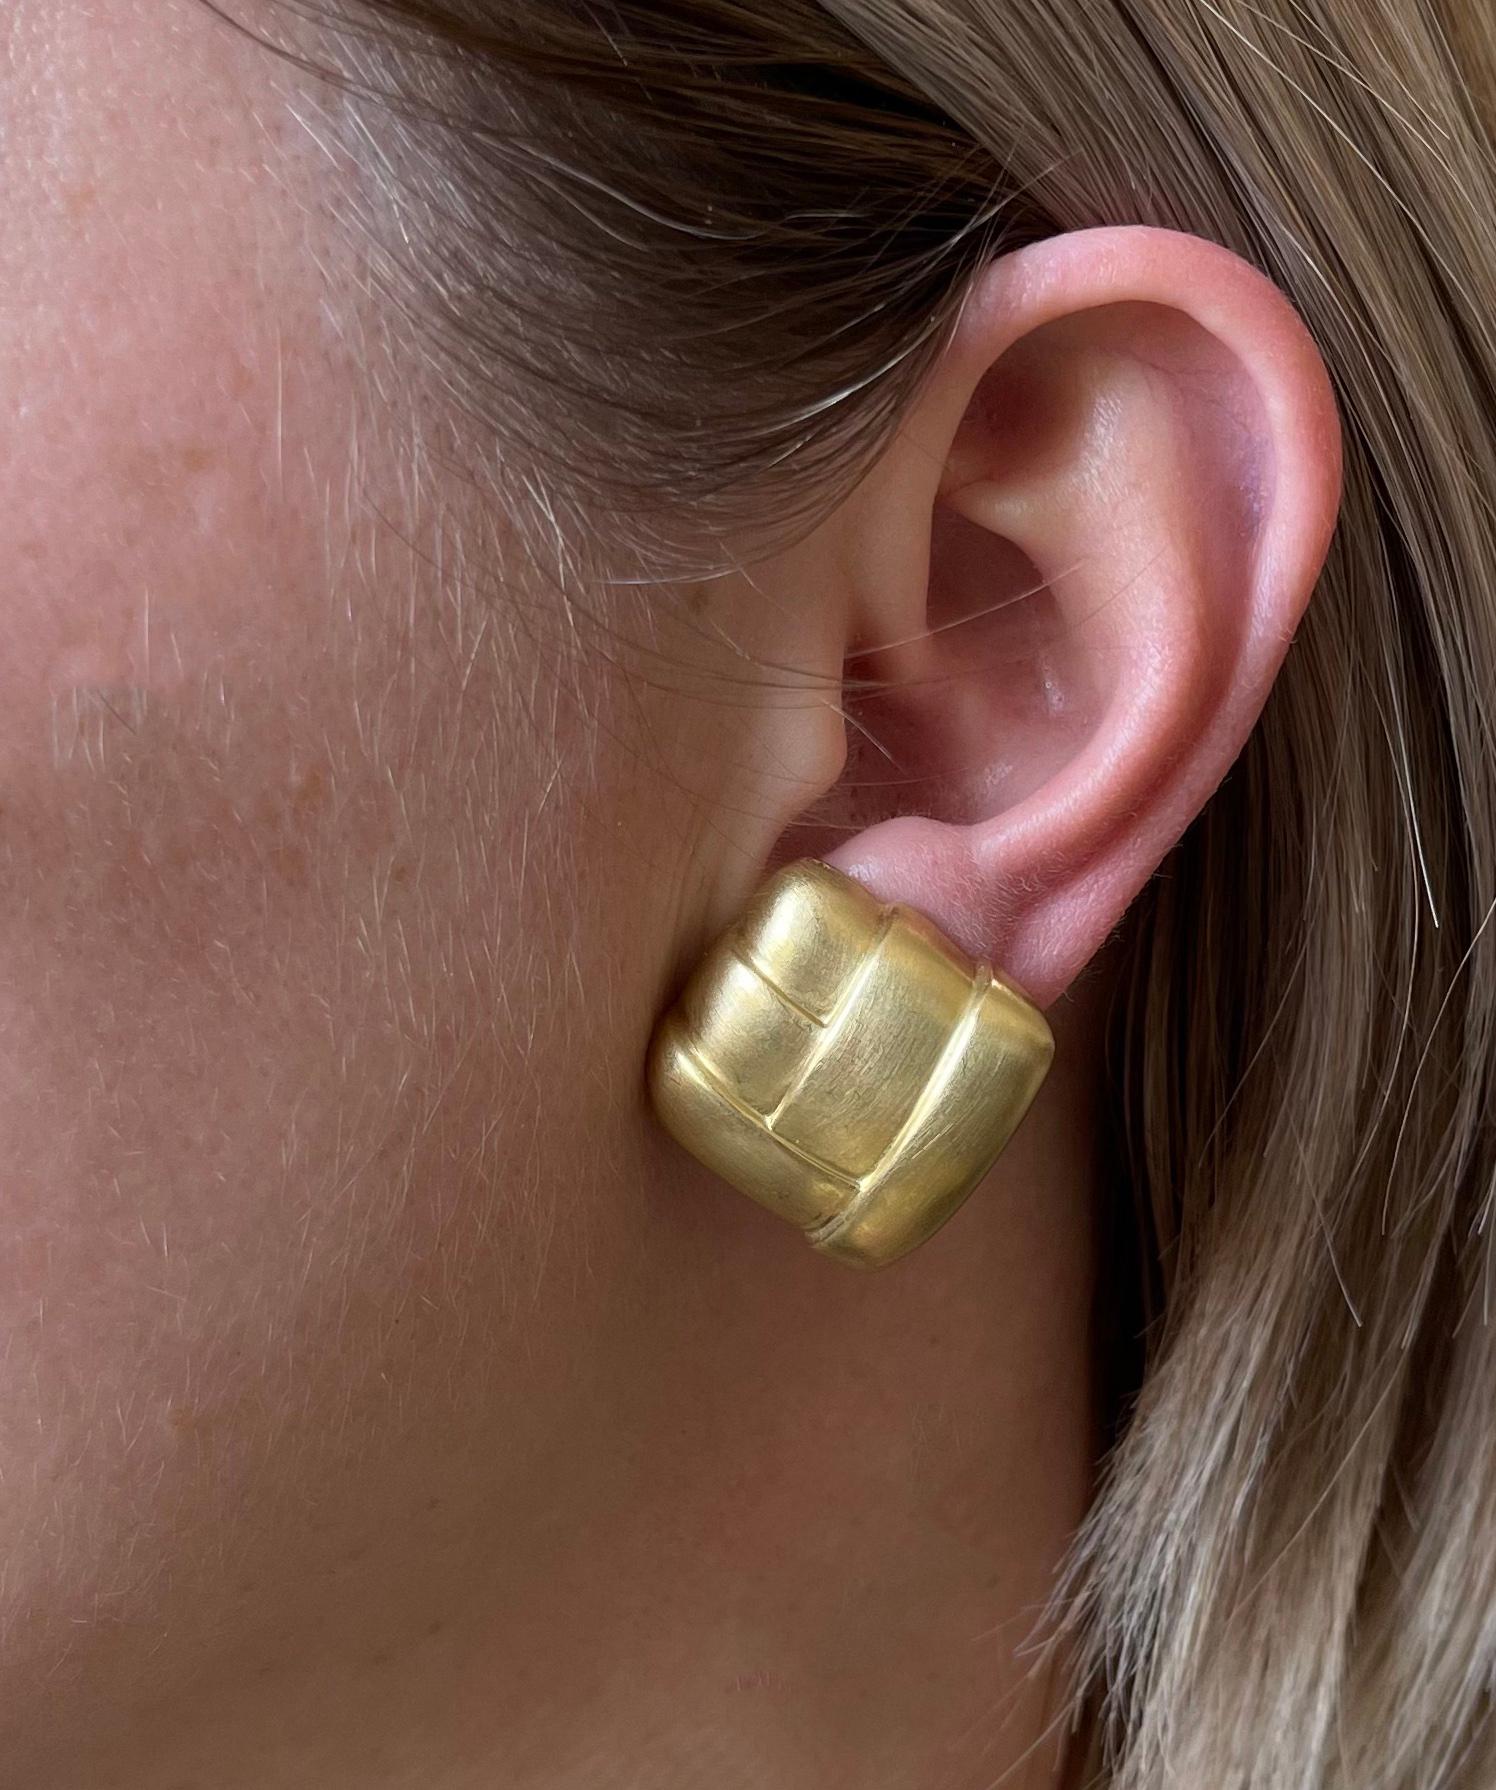 Ein Paar 18er Vintage-Ohrringe aus satiniertem Gold, perfekt für jede Gelegenheit! Die Ohrringe messen 1,25